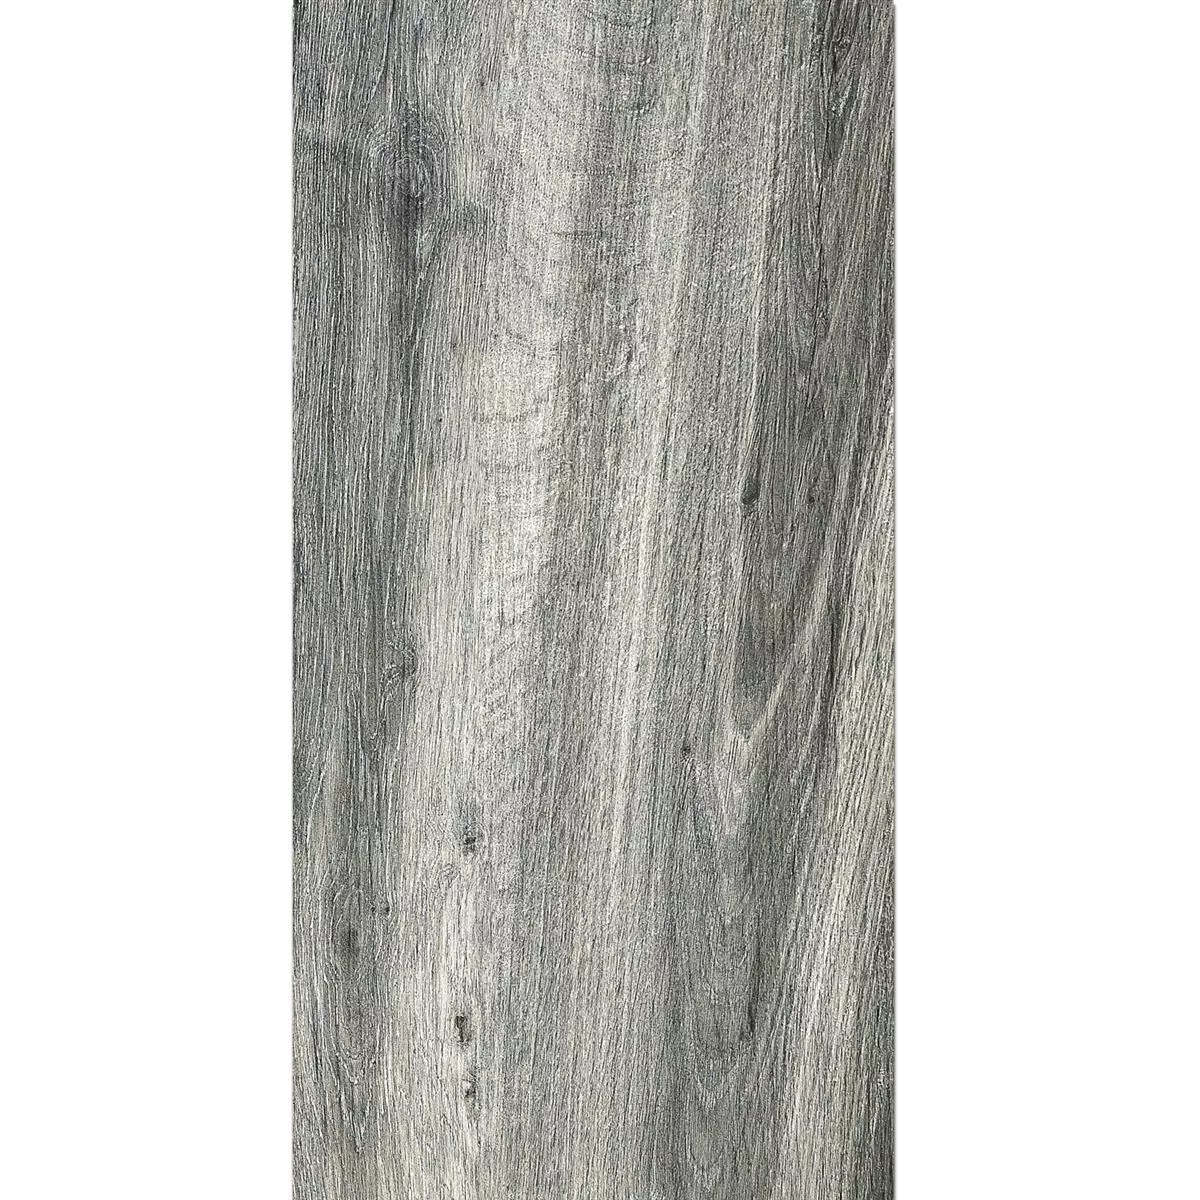 Piastrella Esterni Starwood Legno Ottica Grey 45x90cm